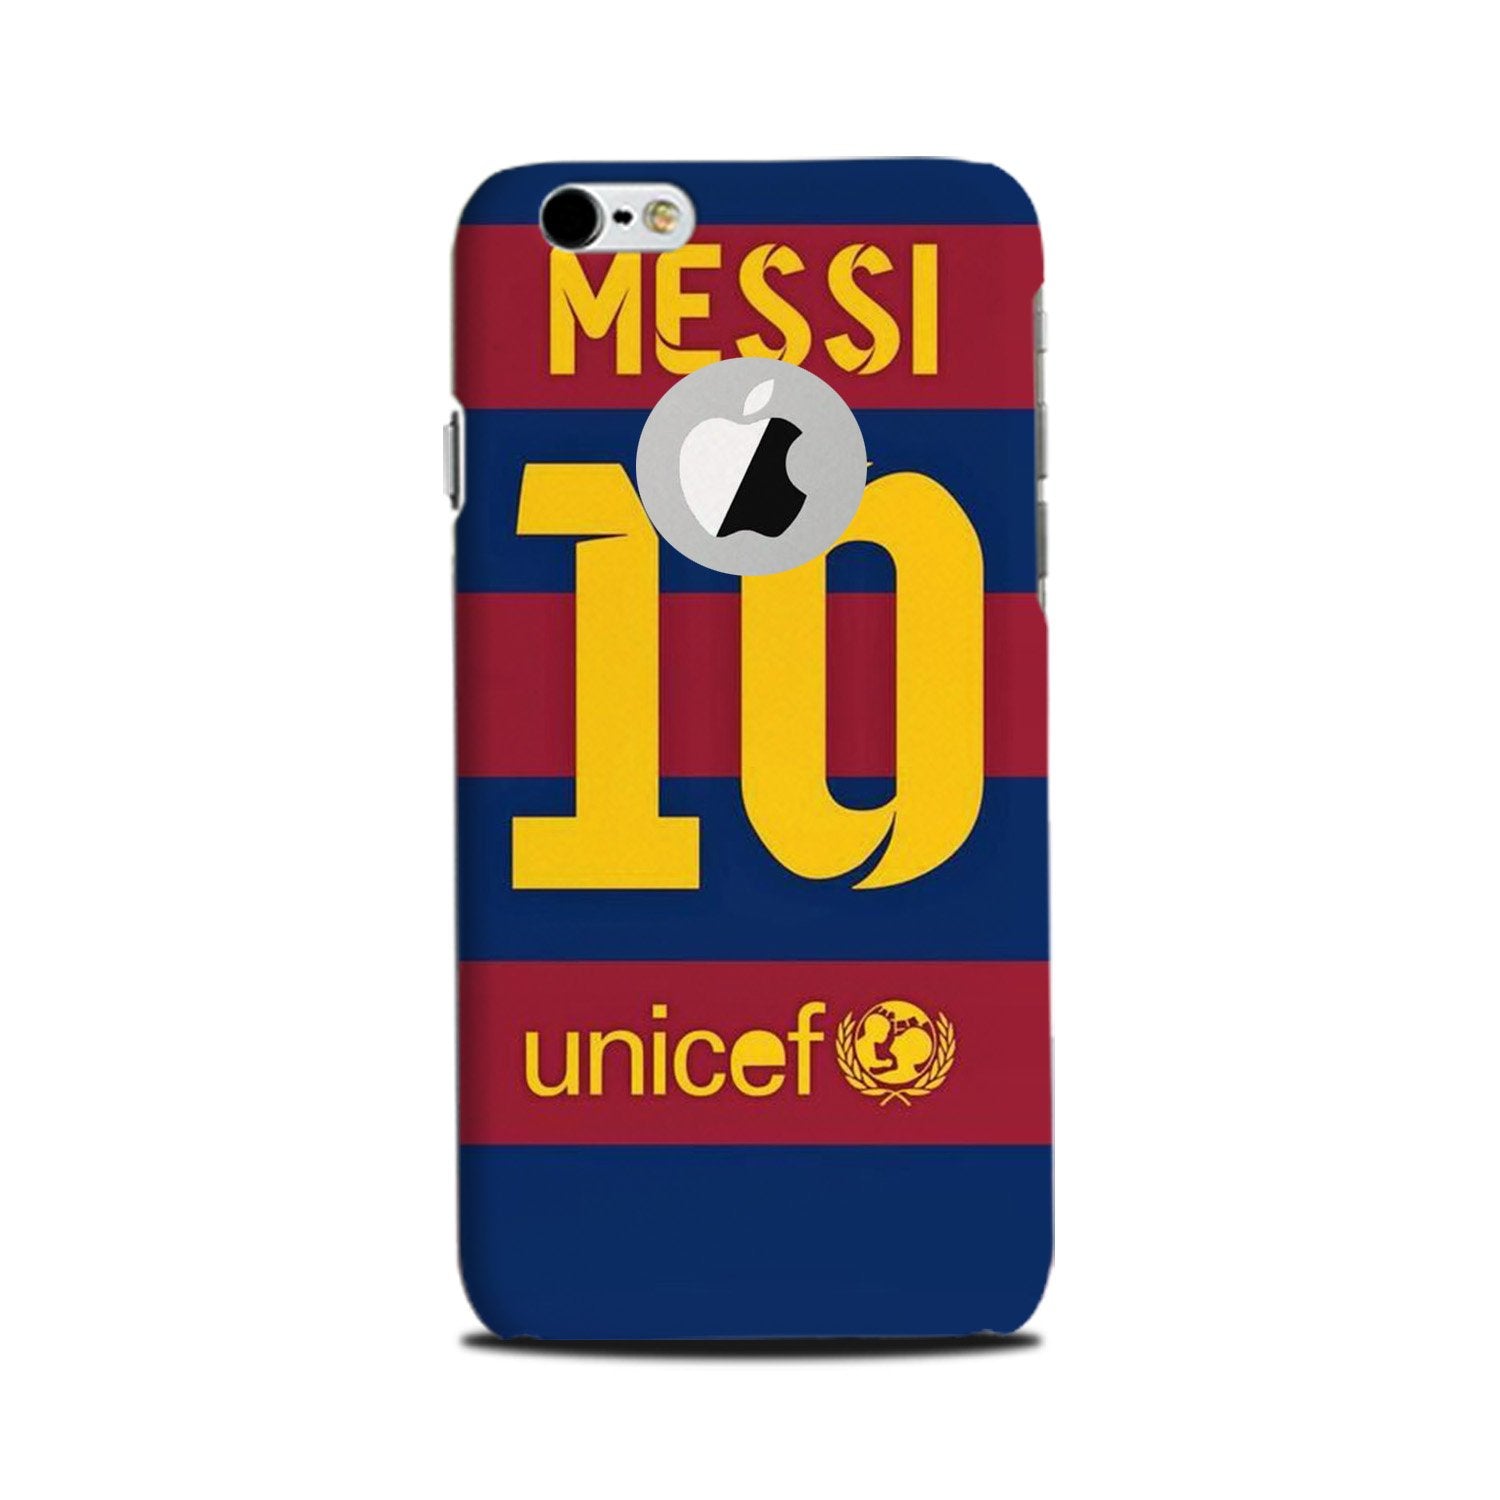 Messi Case for iPhone 6 Plus / 6s Plus logo cut   (Design - 172)